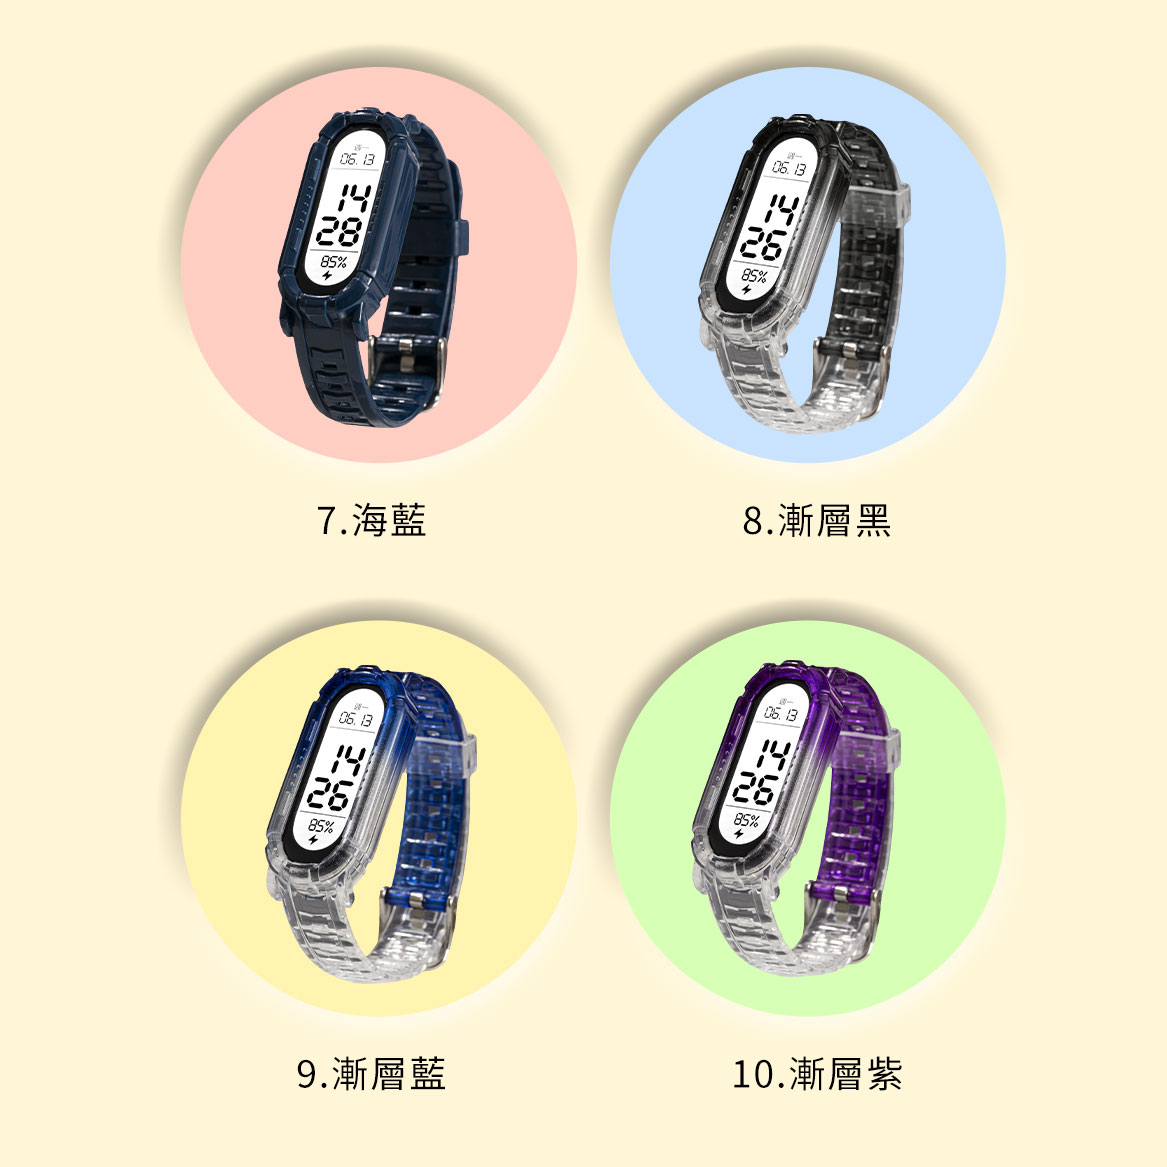 【小米】小米手環7/6/5/4代通用裝甲錶帶 個性運動錶帶 質感升級 替換錶帶